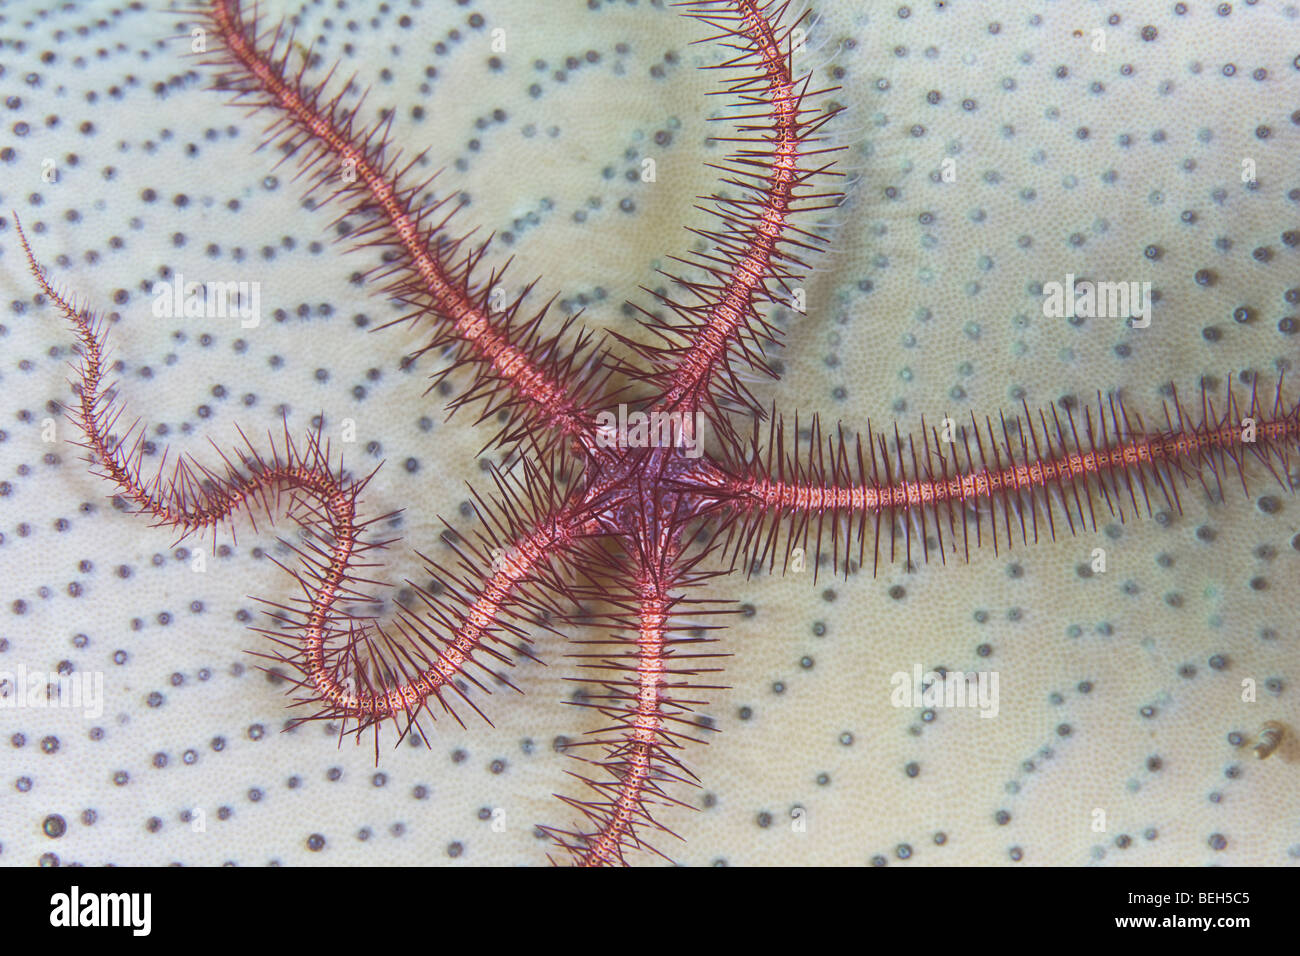 Brittlestar rouge sur le cuir souple, corail Ophiuroidea, Sulawesi, le Détroit de Lembeh, Indonésie Banque D'Images